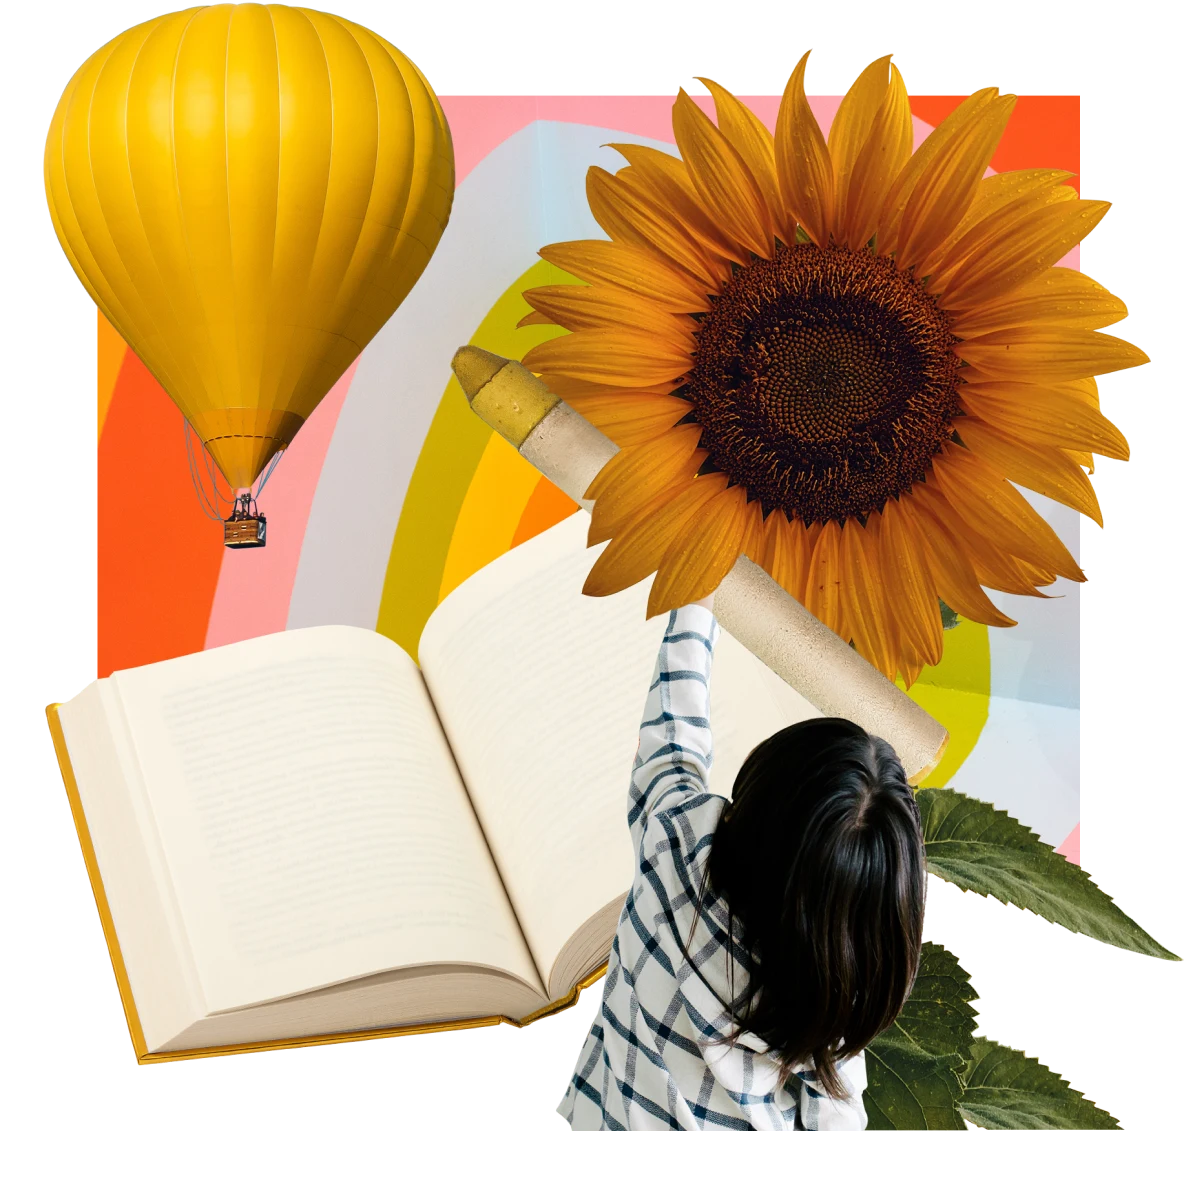 Livro aberto no centro. Criança tentando alcançar um giz de cera amarelo e um girassol. Balão amarelo de ar quente à esquerda com fundo de arco-íris.